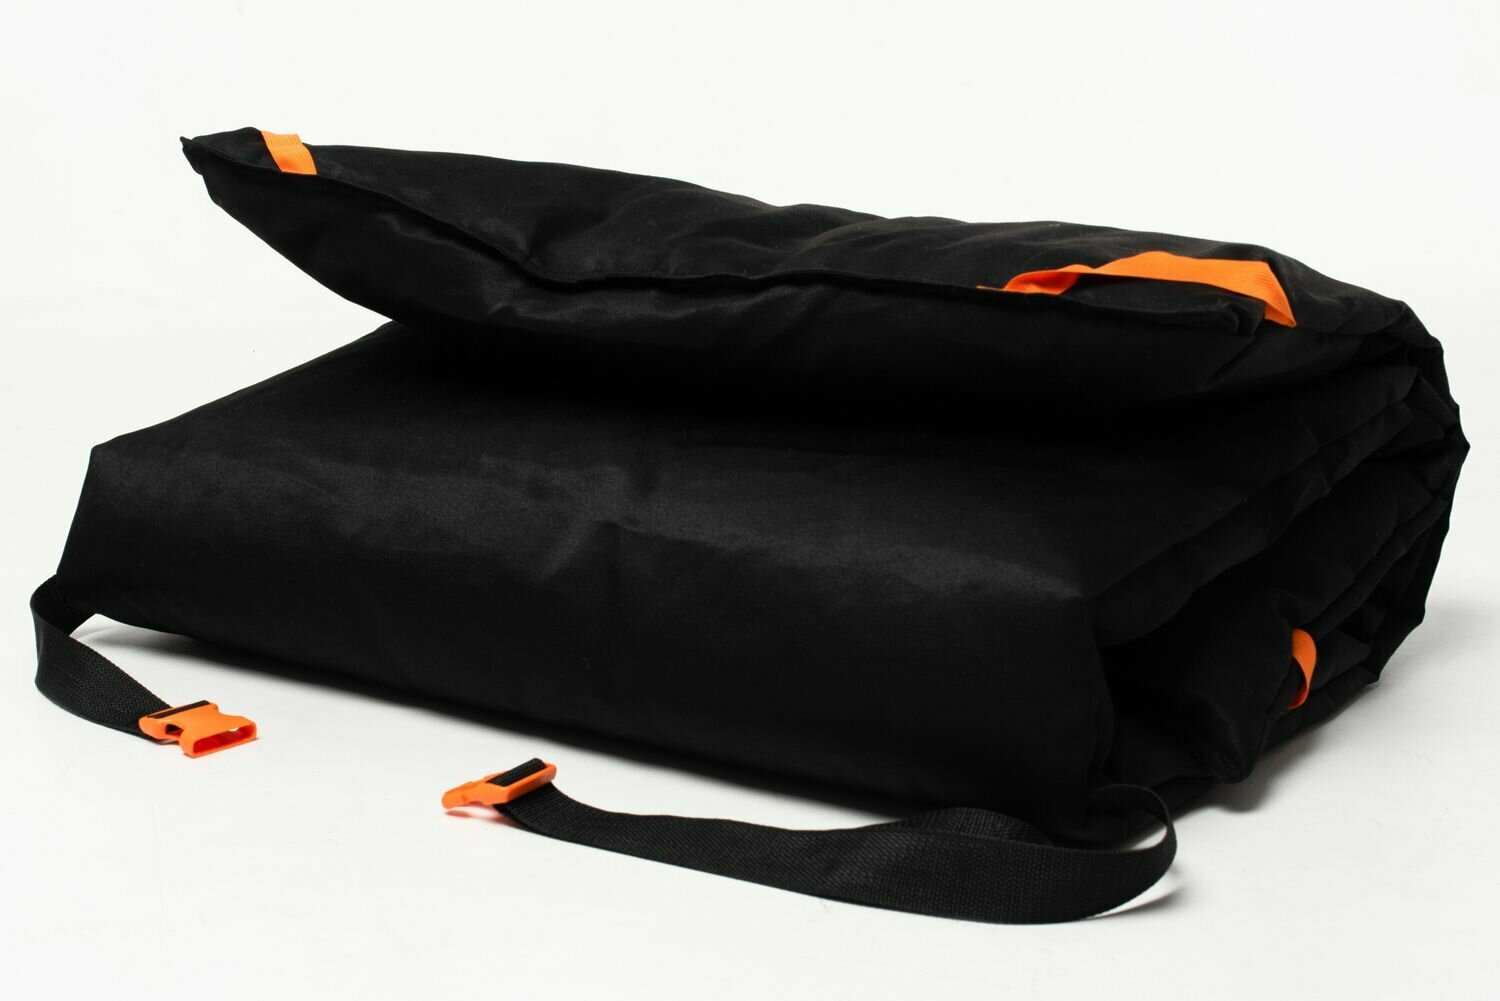 Теплая накидка-матрац "6 углов" 200/80 см, черно-оранжевый, на раскладушку, туристическую кровать